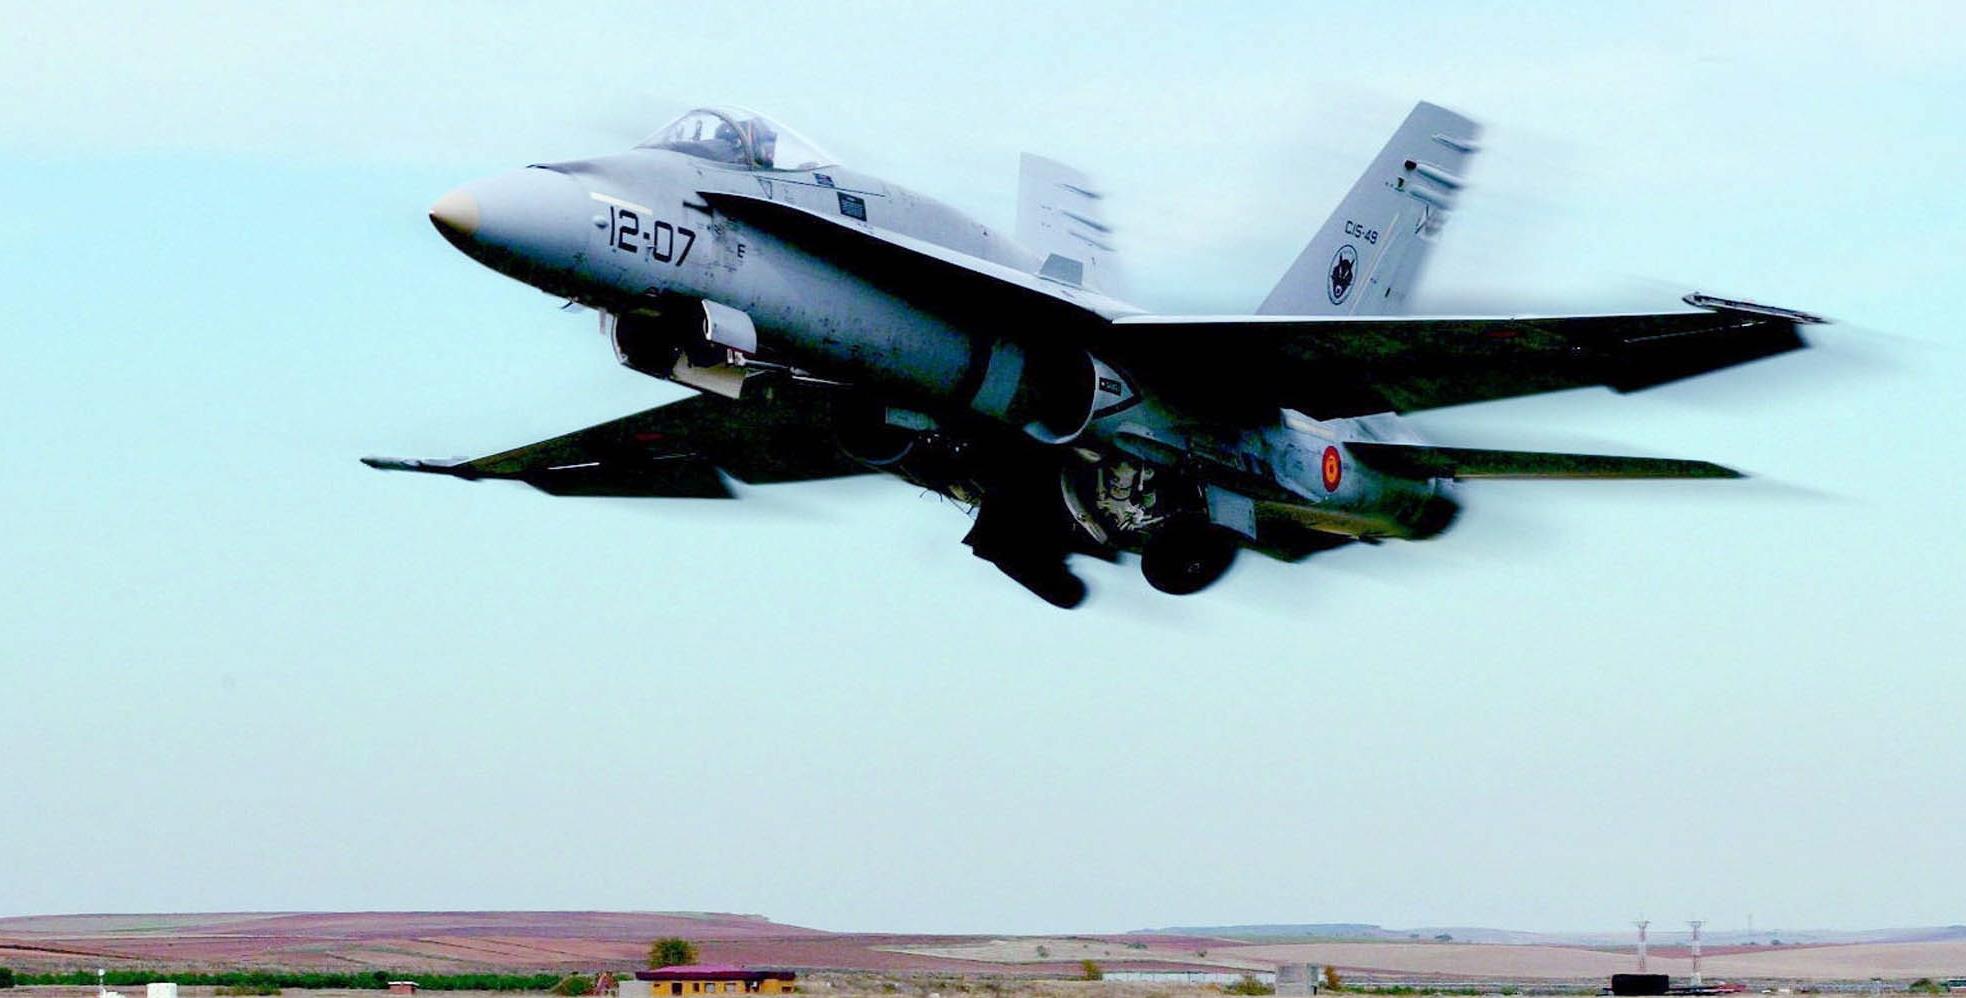 Μαχητικό F-18 συνετρίβη κοντά στη Μαδρίτη, νεκρός ο πιλότος [Βίντεο]